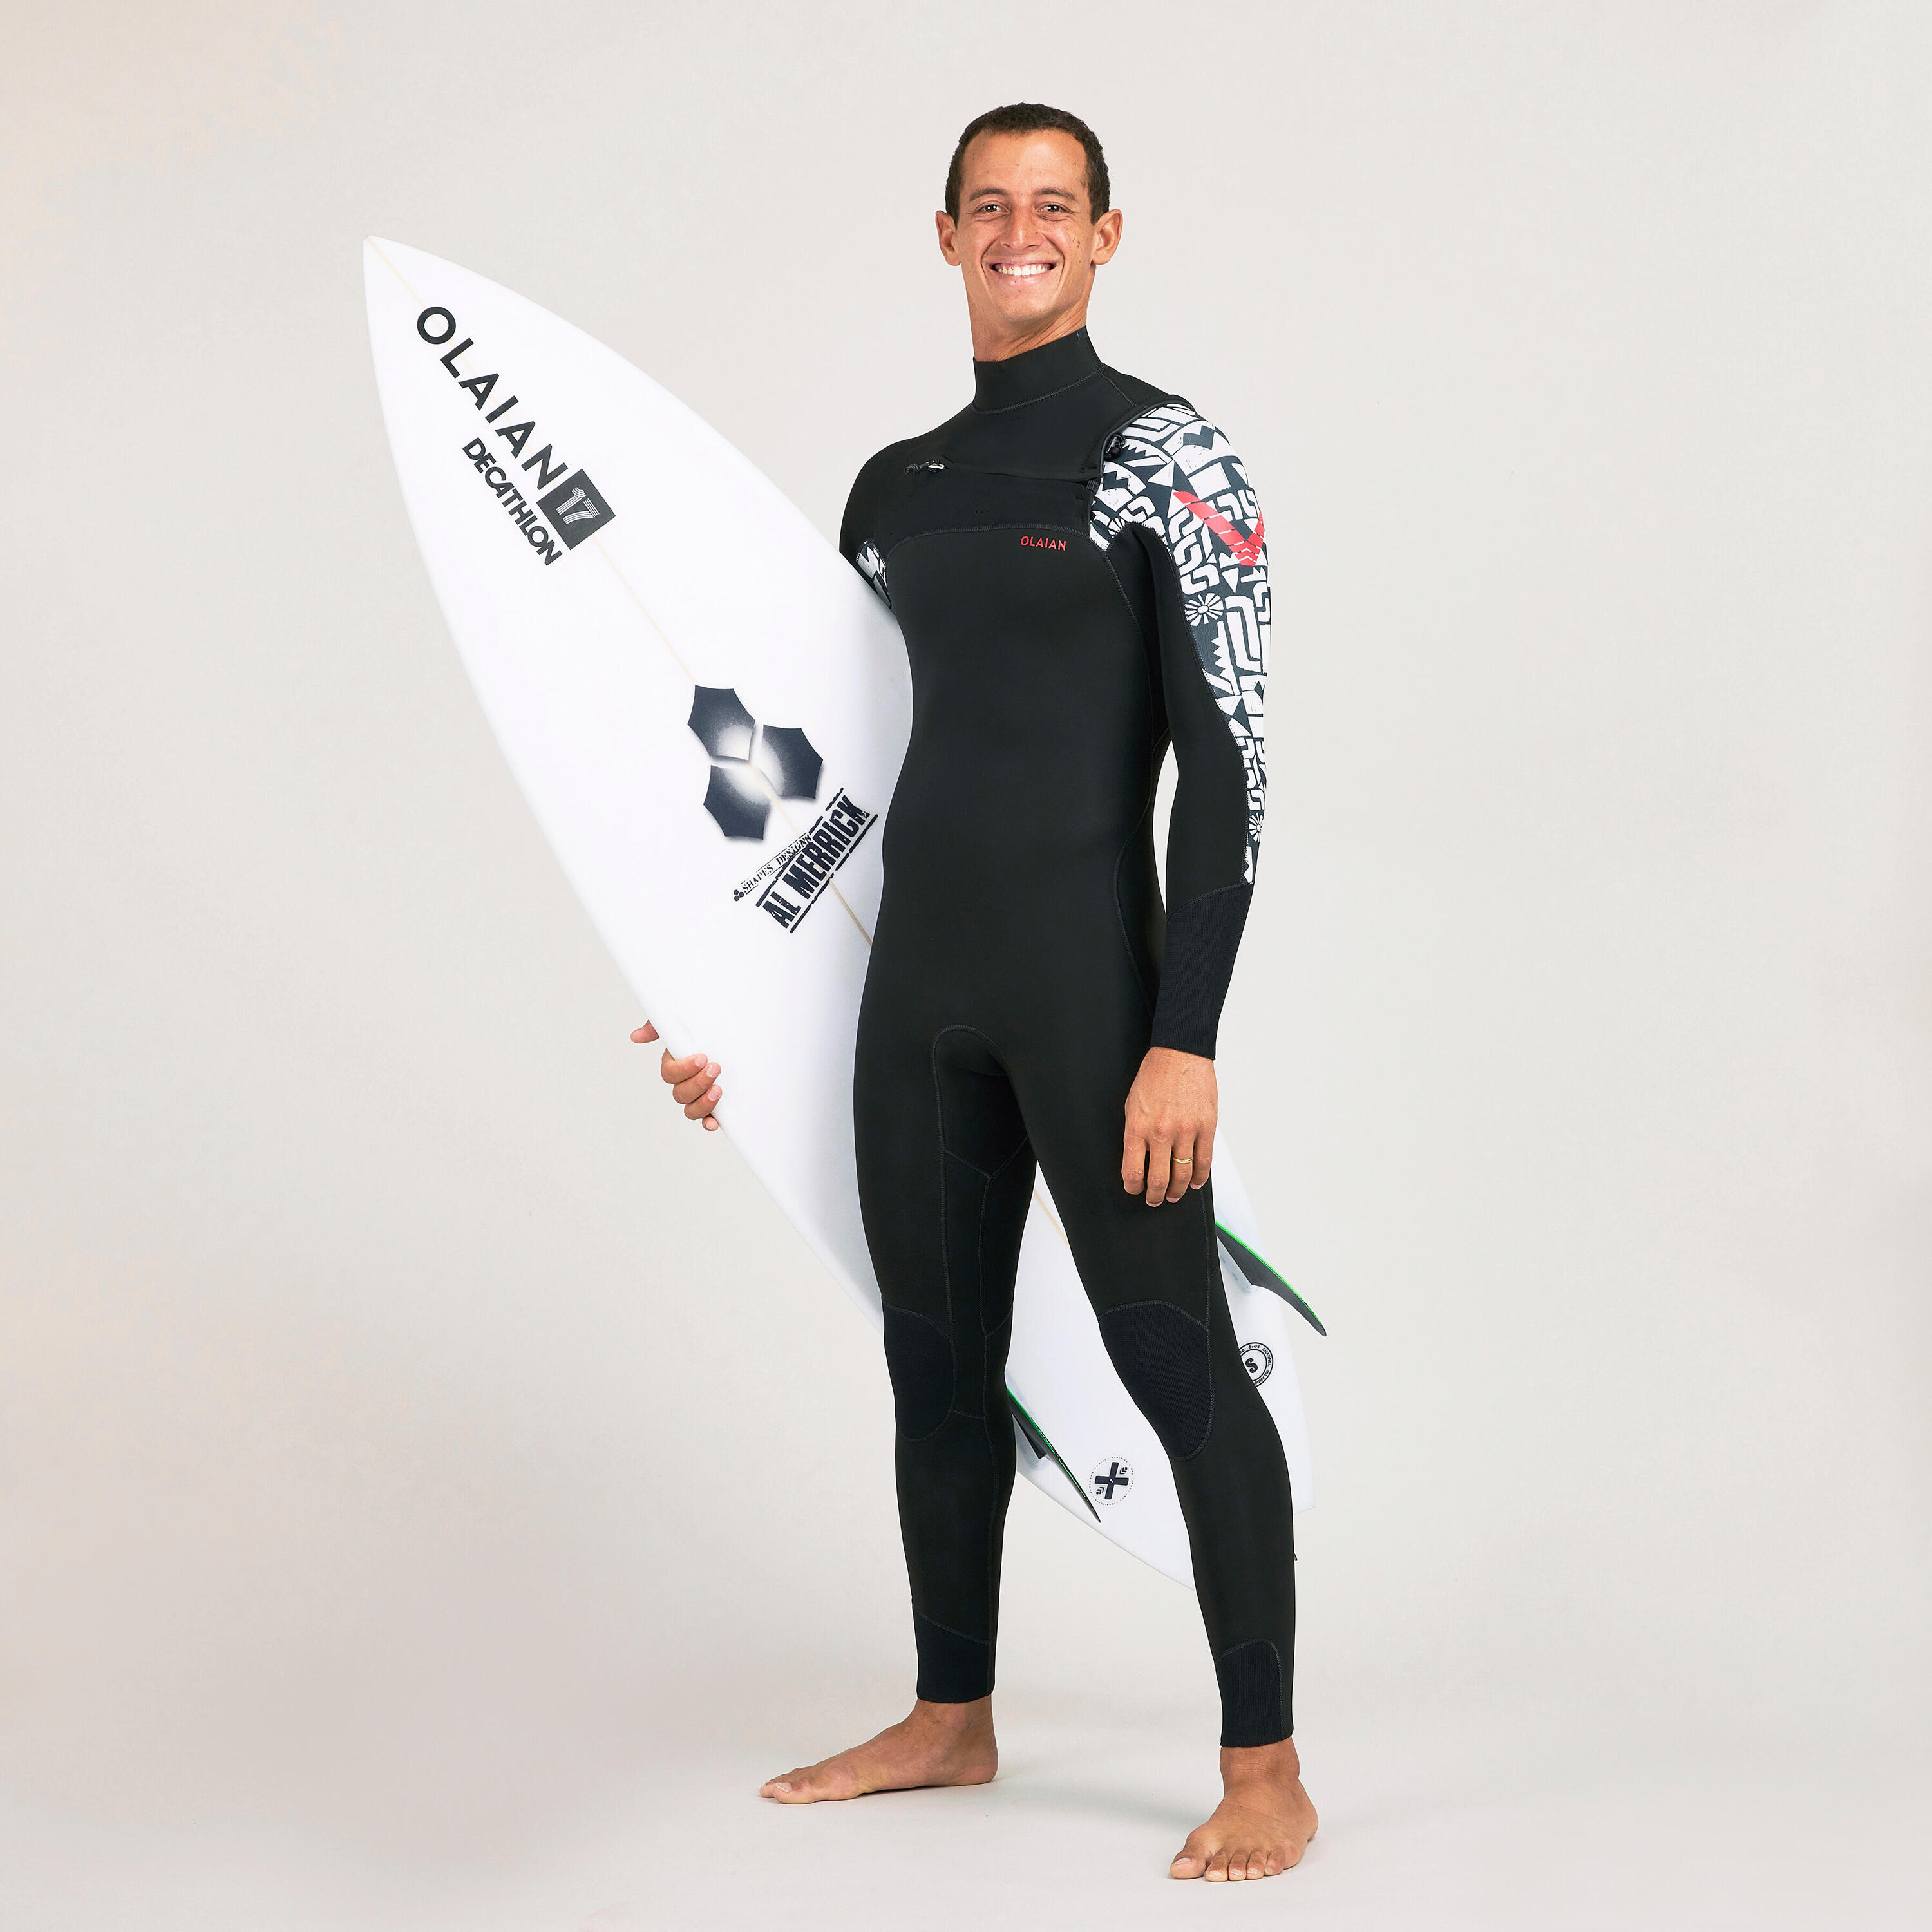 OLAIAN Men's surfing wetsuit 4/3 mm neoprene - 900 team rider black